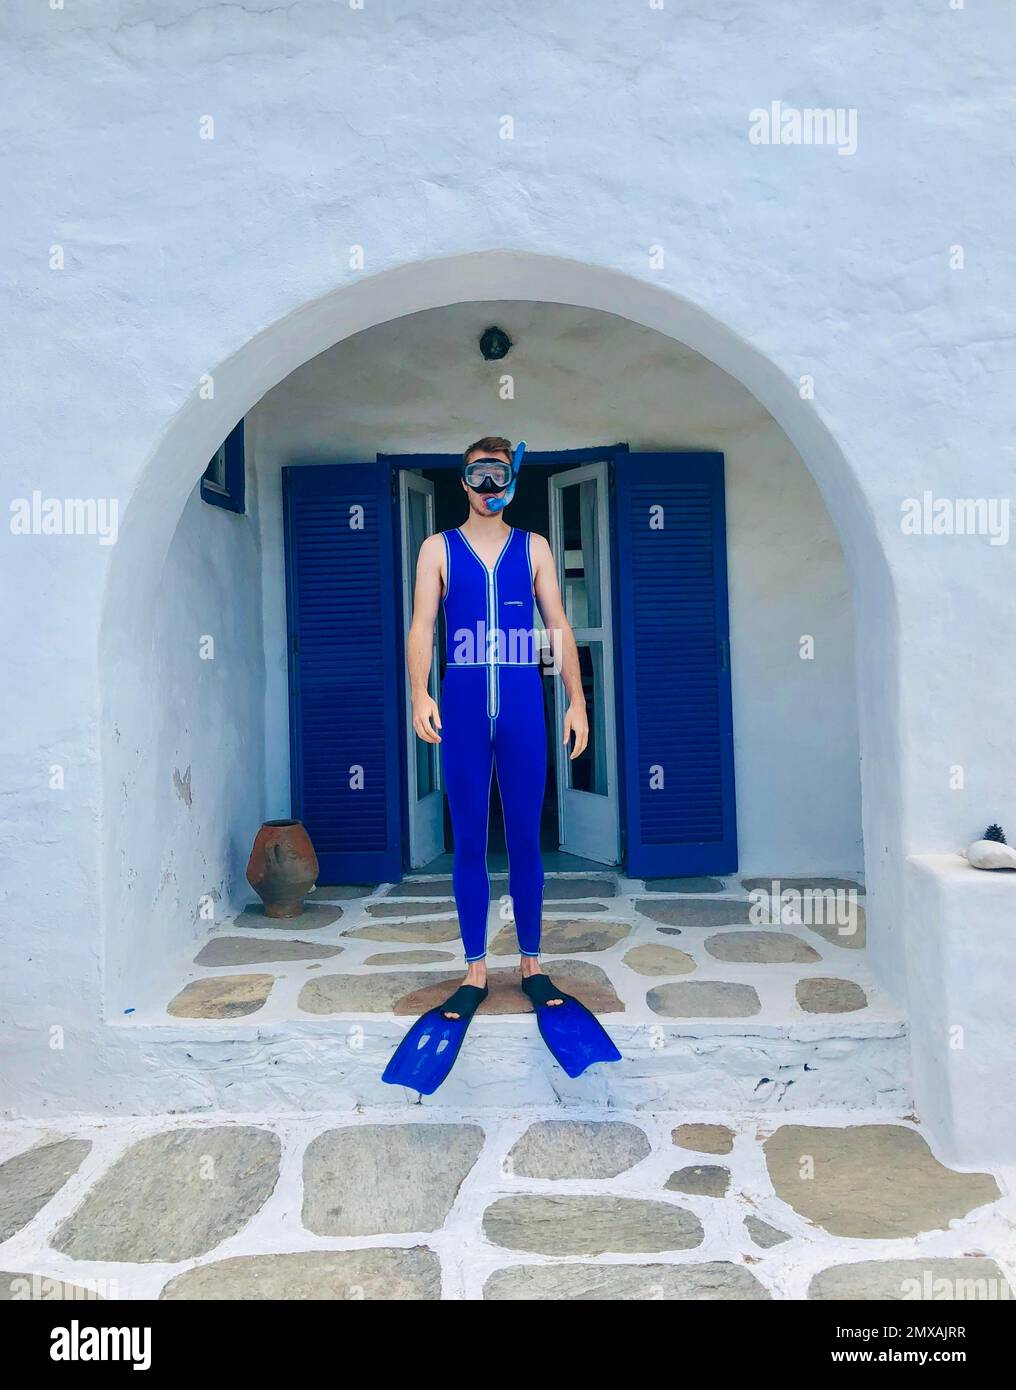 Junger Mann in blauem Neoprenanzug mit Flossen, Taucherbrille und Schnorchel, steht vor dem weißen Kykladen Haus, Paros, Kykladen Inseln, Griechenland Stockfoto